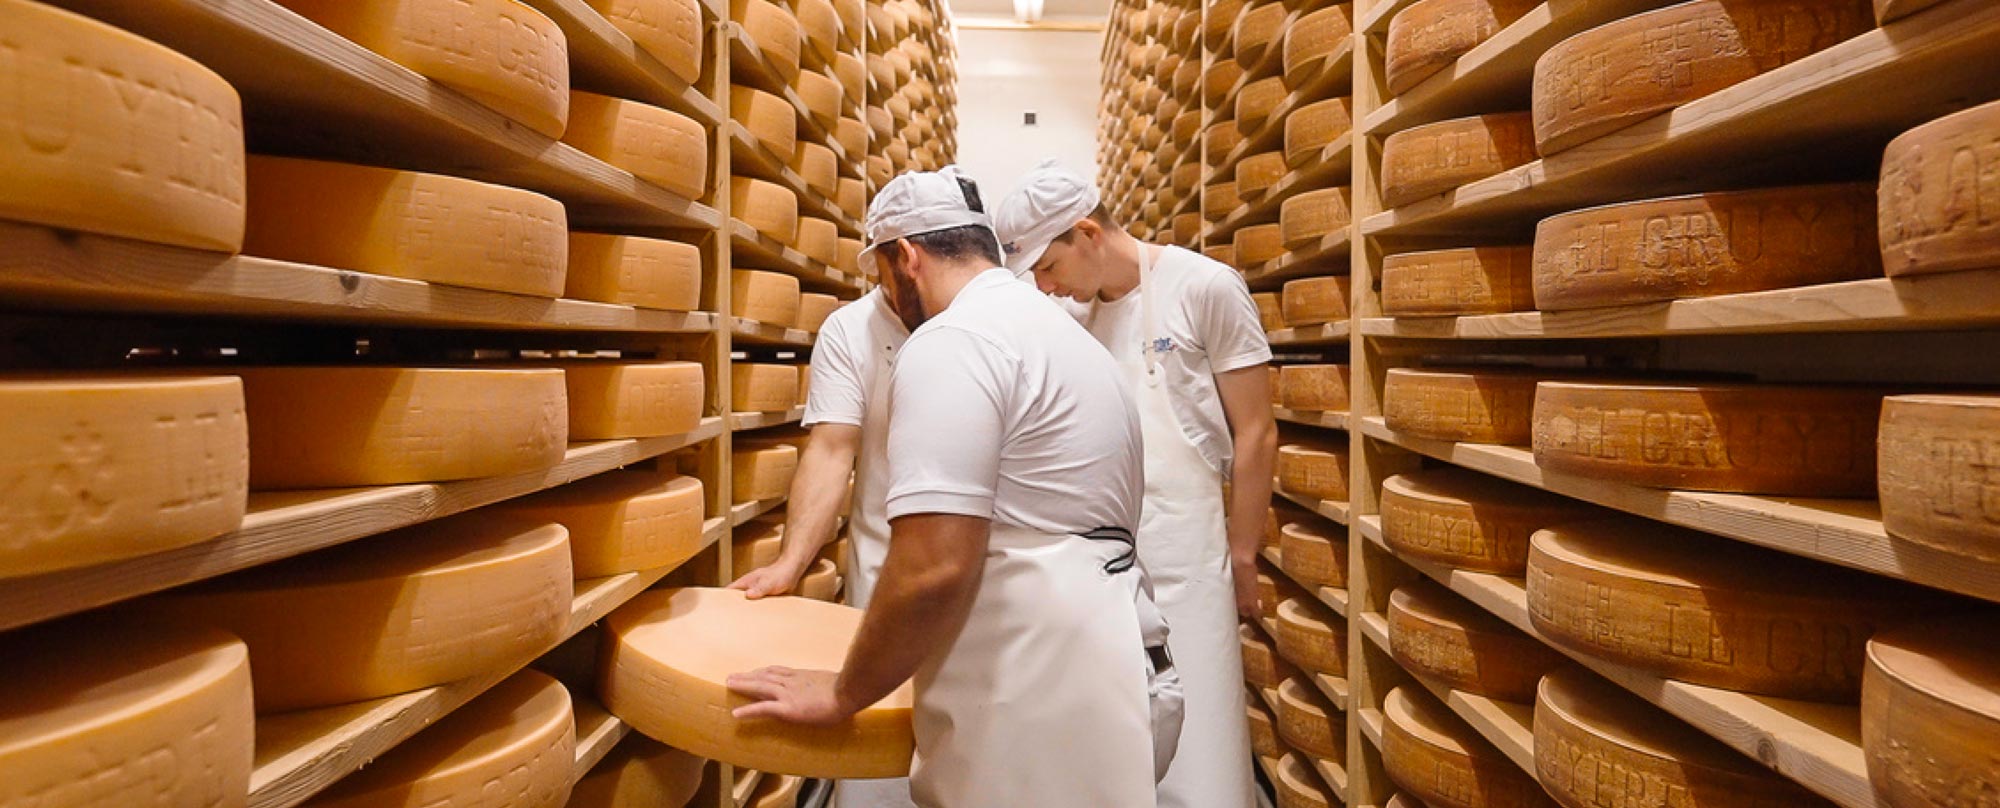 Equipe de la fromagerie Mesot - Cave à fromage